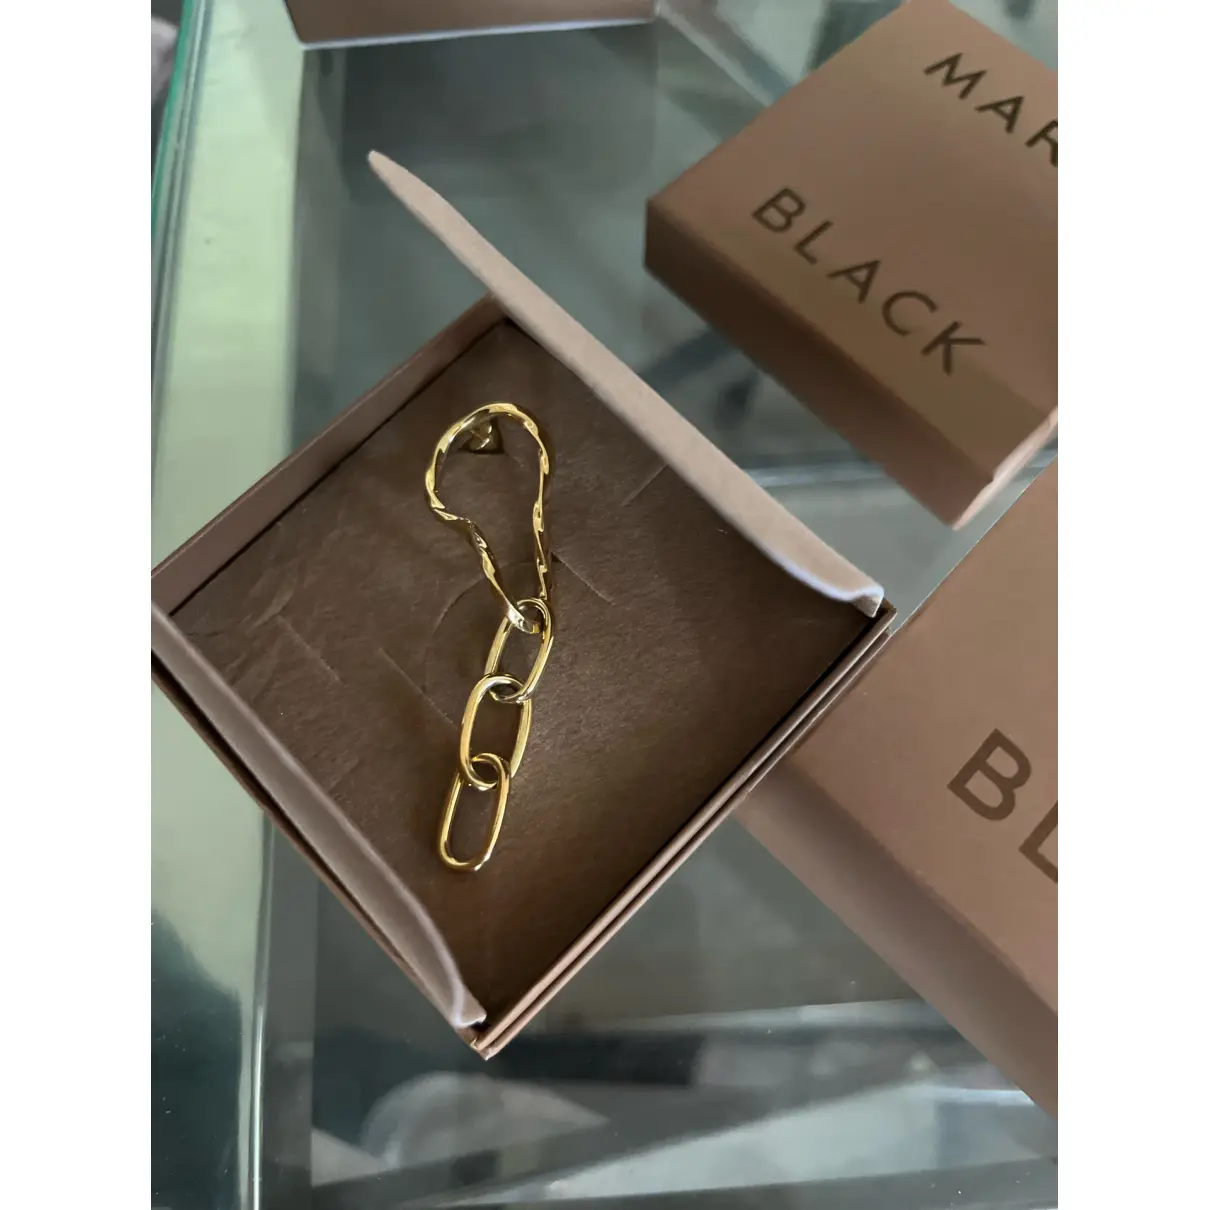 Buy Maria Black Silver earrings online